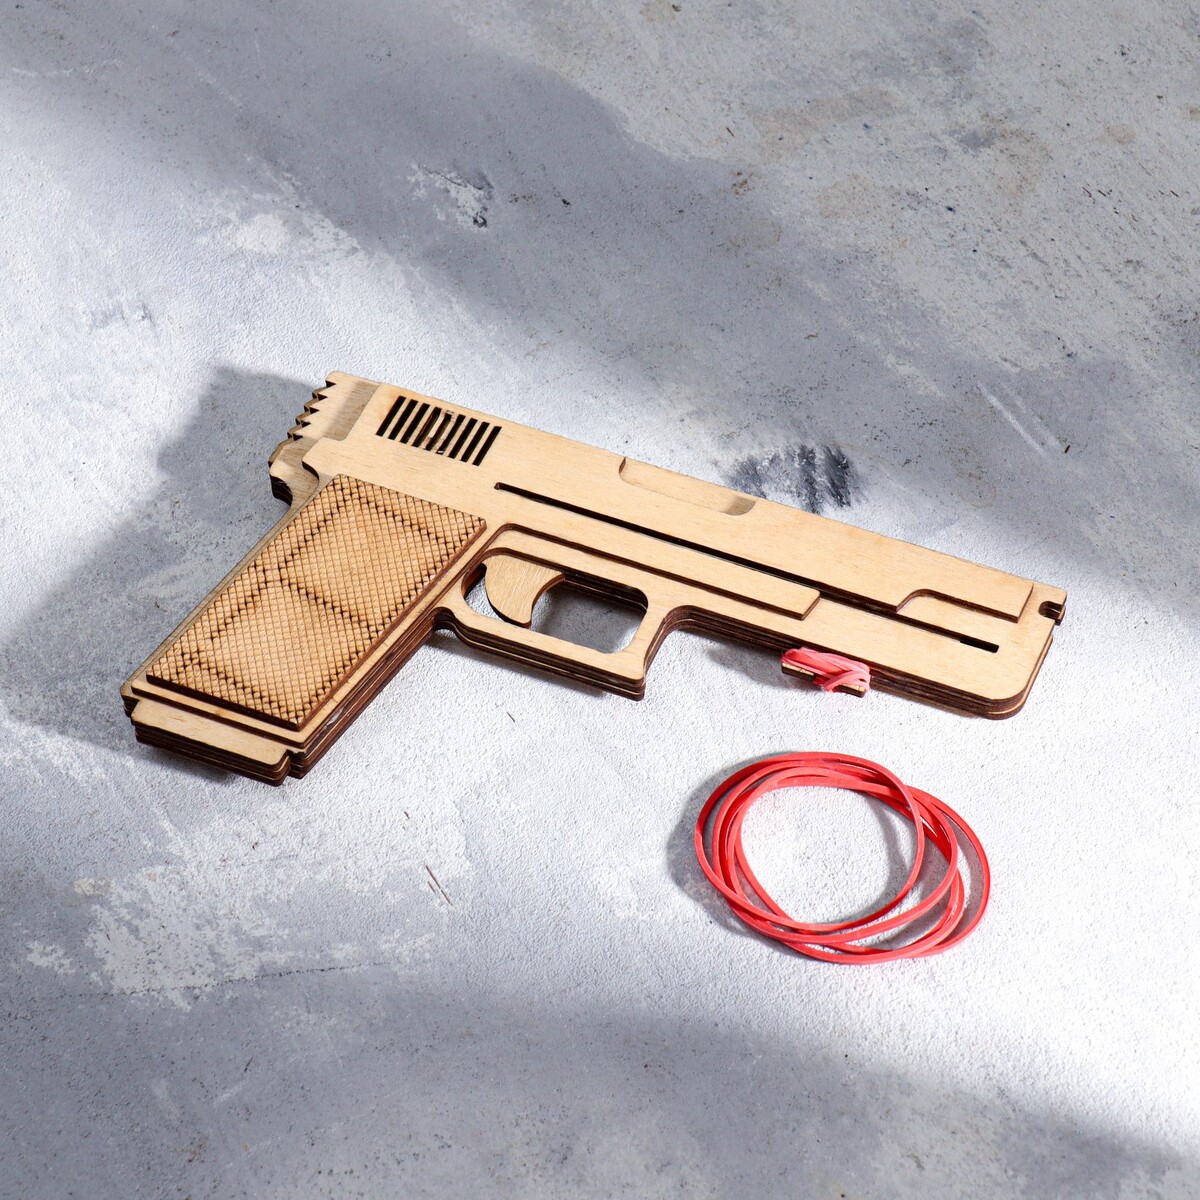 Сувенир деревянный пистолет резинкострел тт, стреляет резинками деревянный макет ппш arma toys arma стреляющий резинками 70 см неокрашенный игрушка